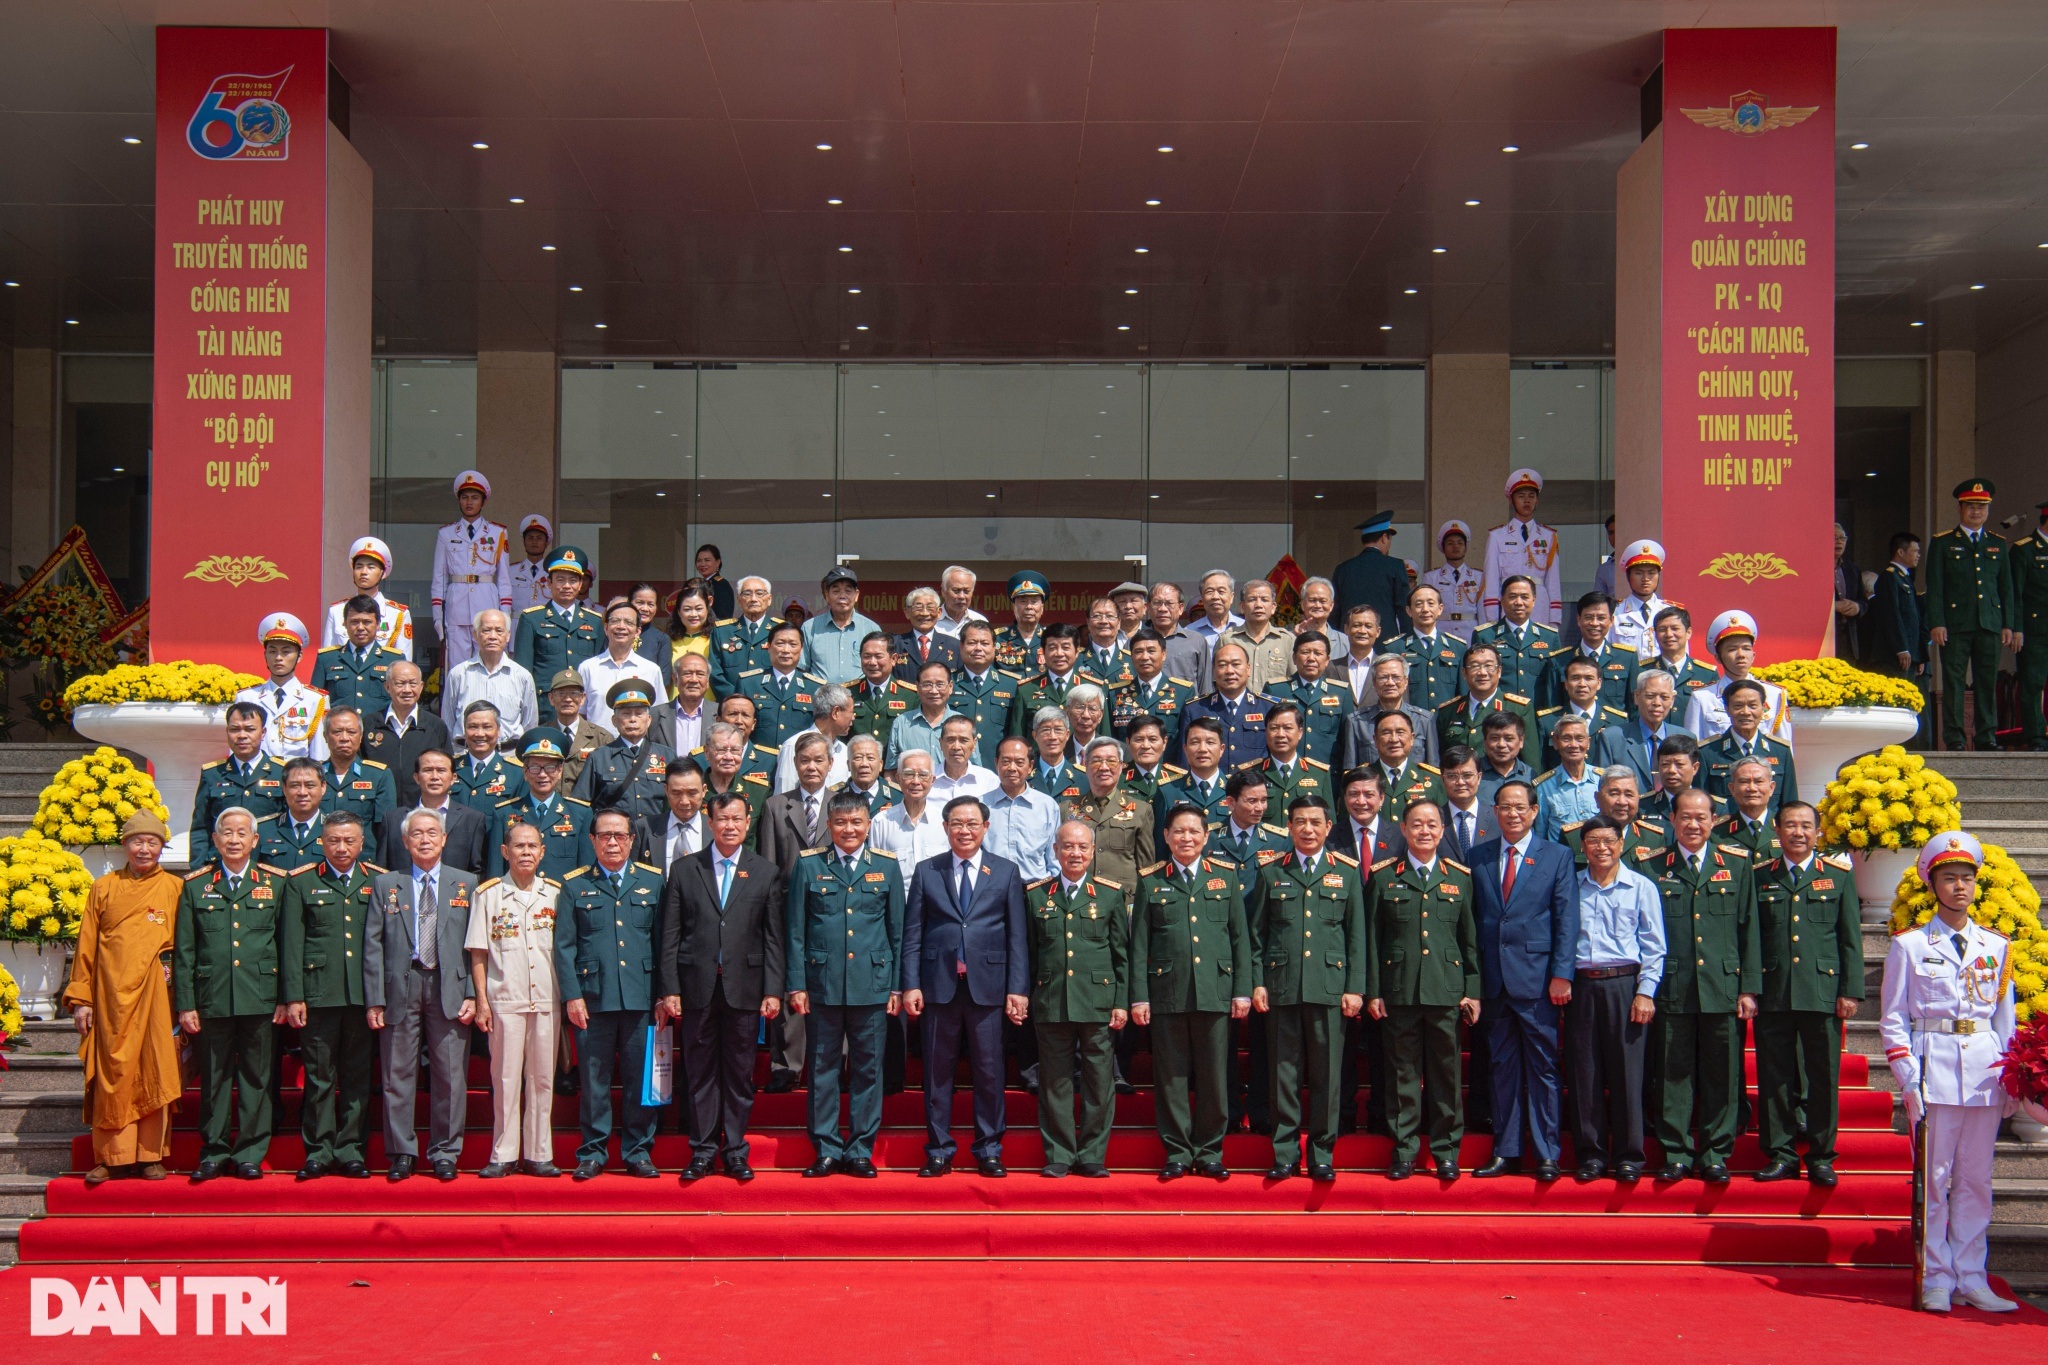 Chủ tịch Quốc hội Vương Đình Huệ dự Lễ kỷ niệm 60 năm Quân chủng PKKQ - 12